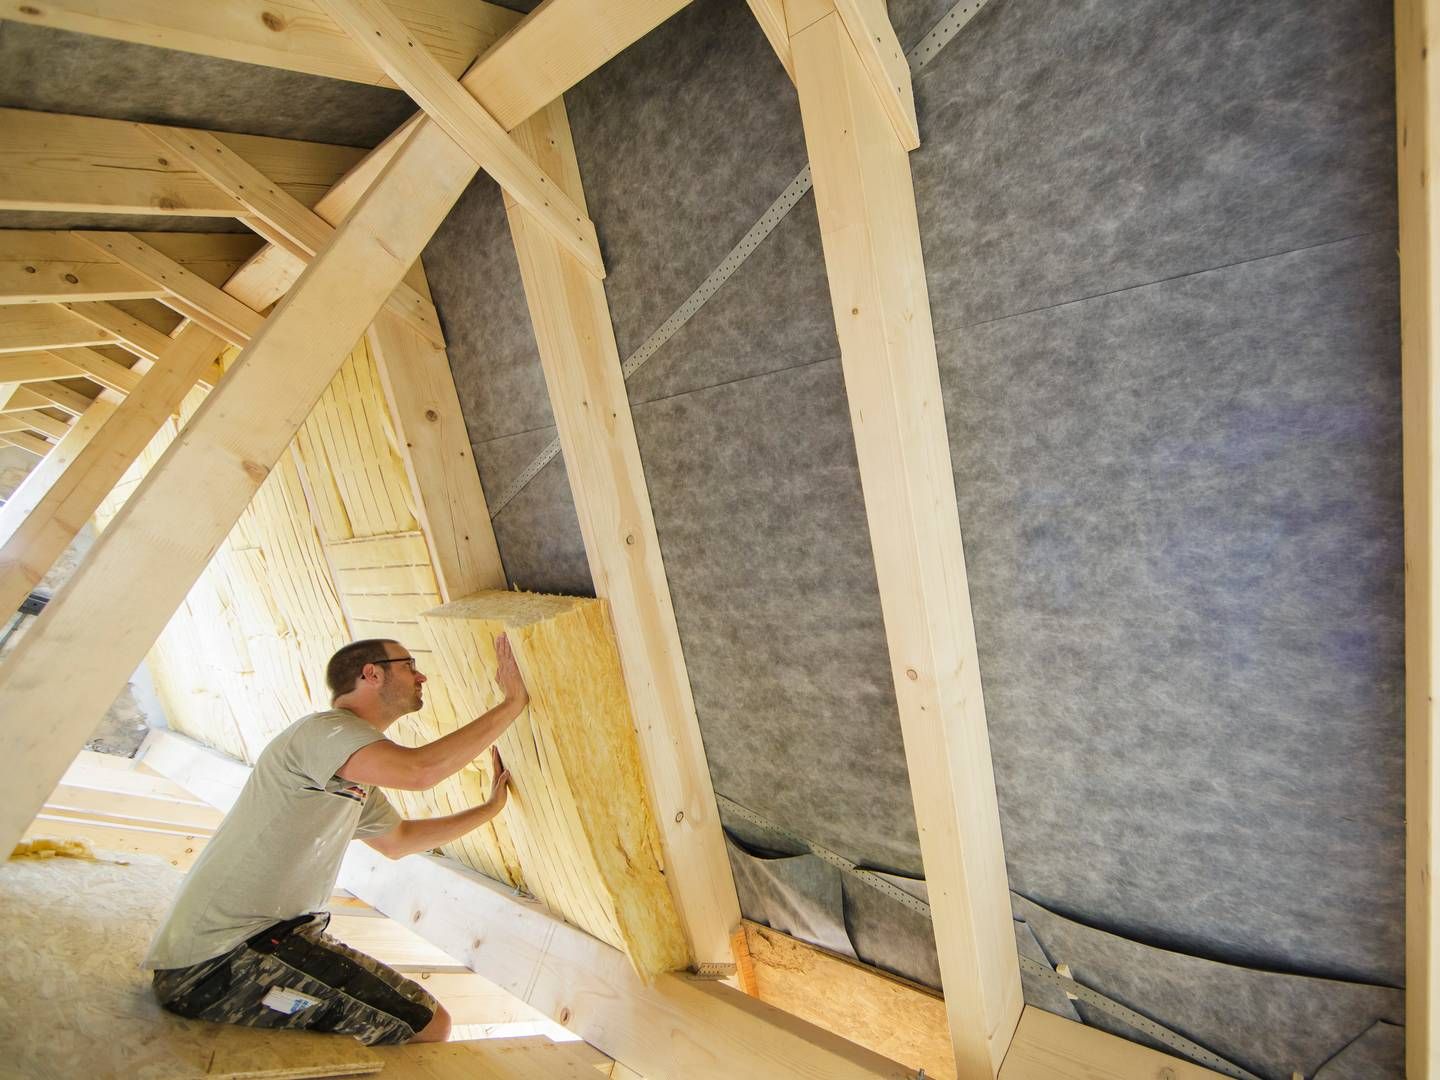 Dämmung eines Dachstuhls. | Foto: picture alliance / photothek | Thomas Trutschel